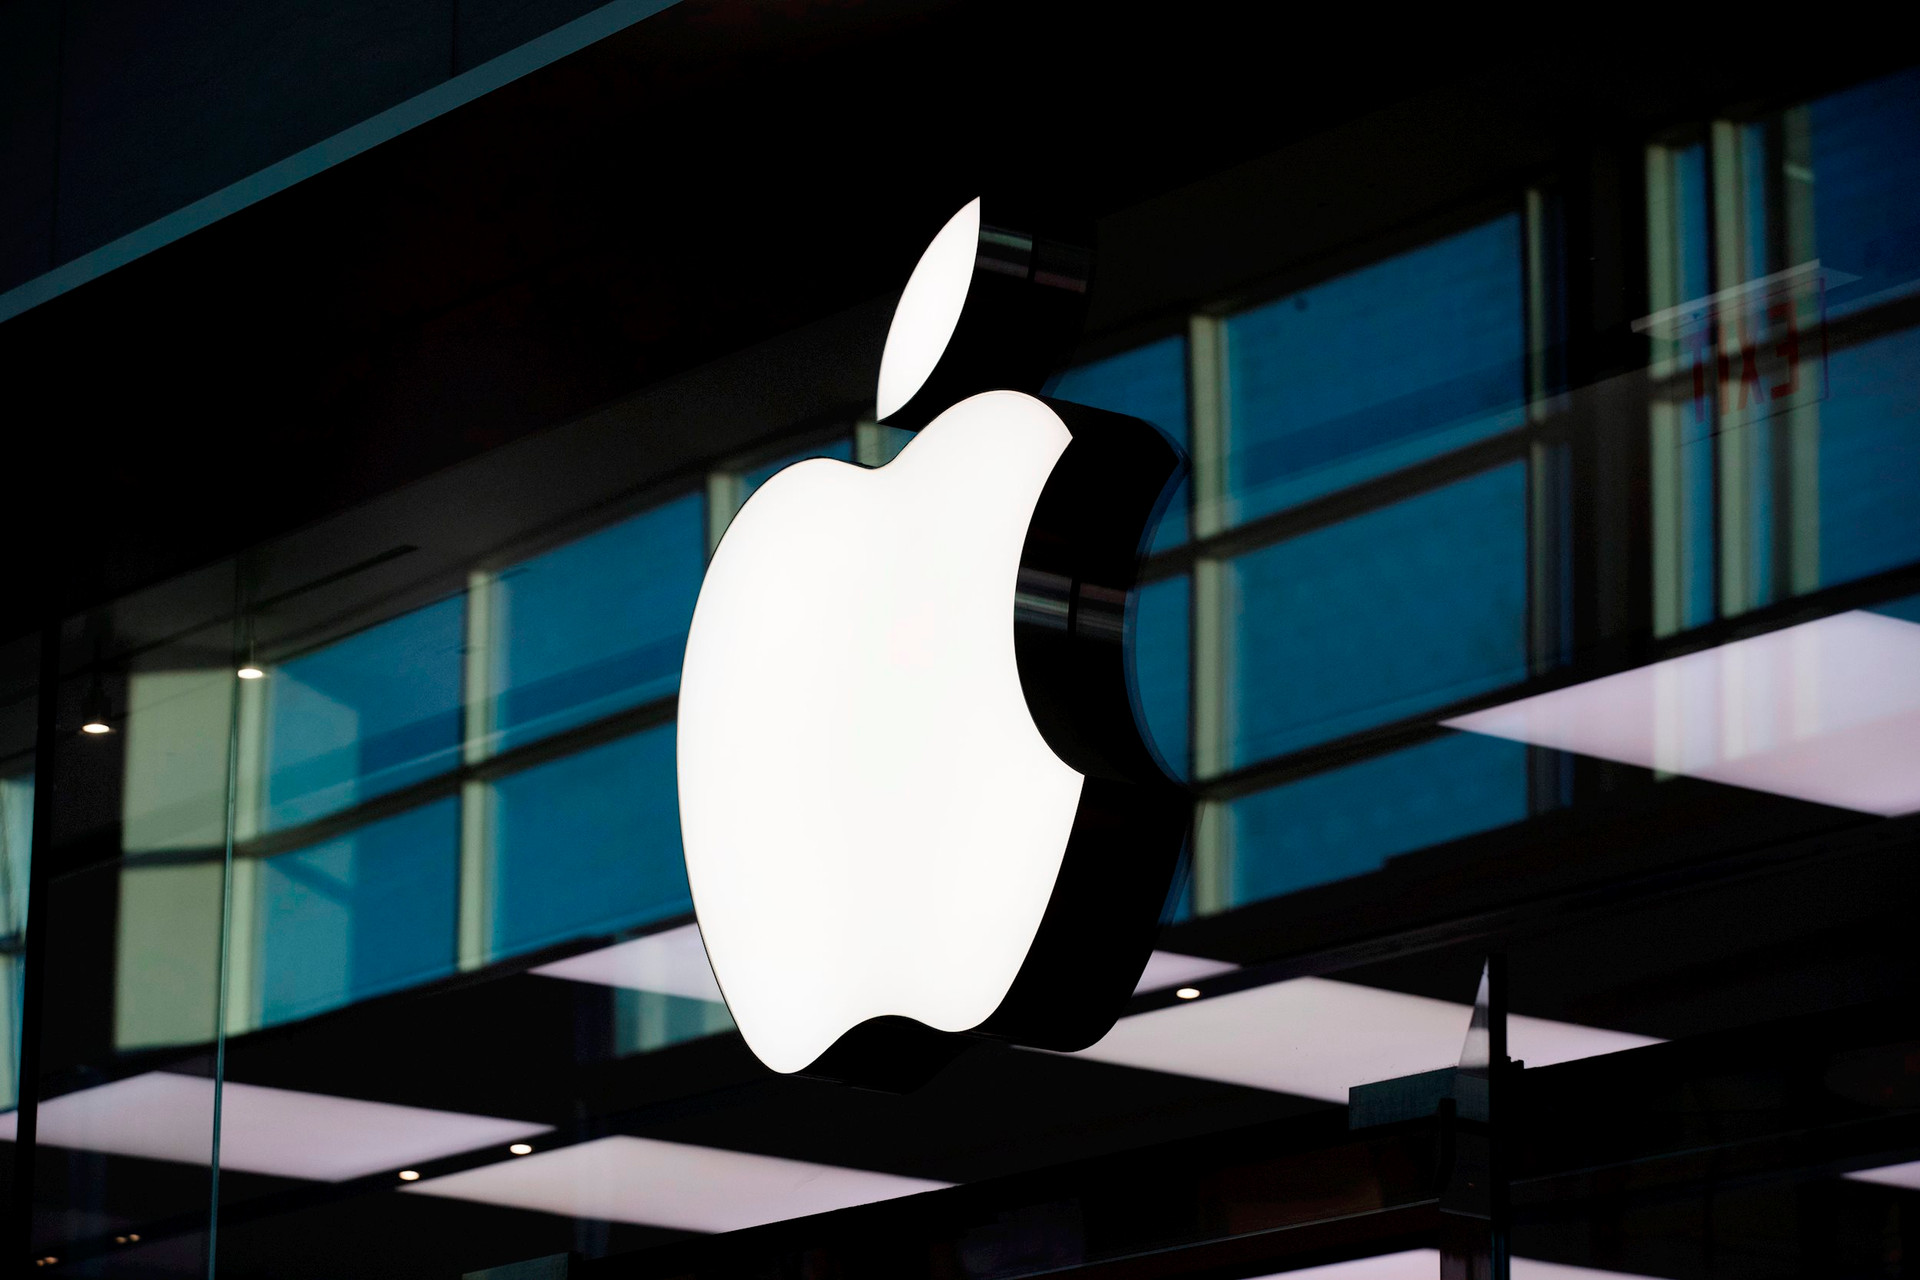 Nhà đầu tư hoảng loạn bán tháo, vốn hóa Apple sắp bốc hơi 60 tỷ USD chỉ vì 1 thông báo